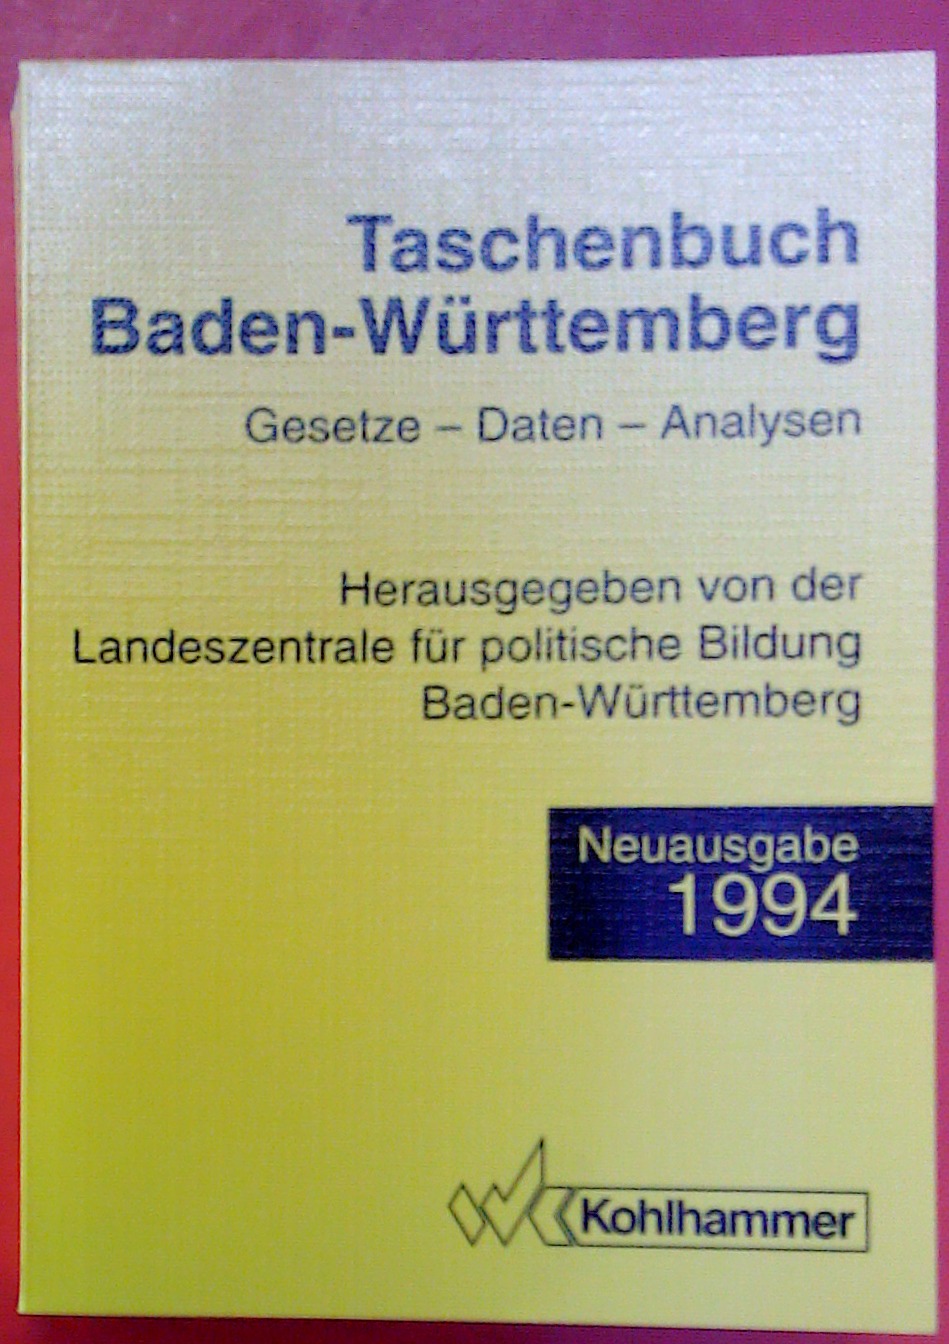 Taschenbuch Baden-Württemberg. Gesetze - Daten - Analysen. Neuausgabe 1994 - Hrsg. Landeszentrale für politishe Bildung Baden-Württemberg